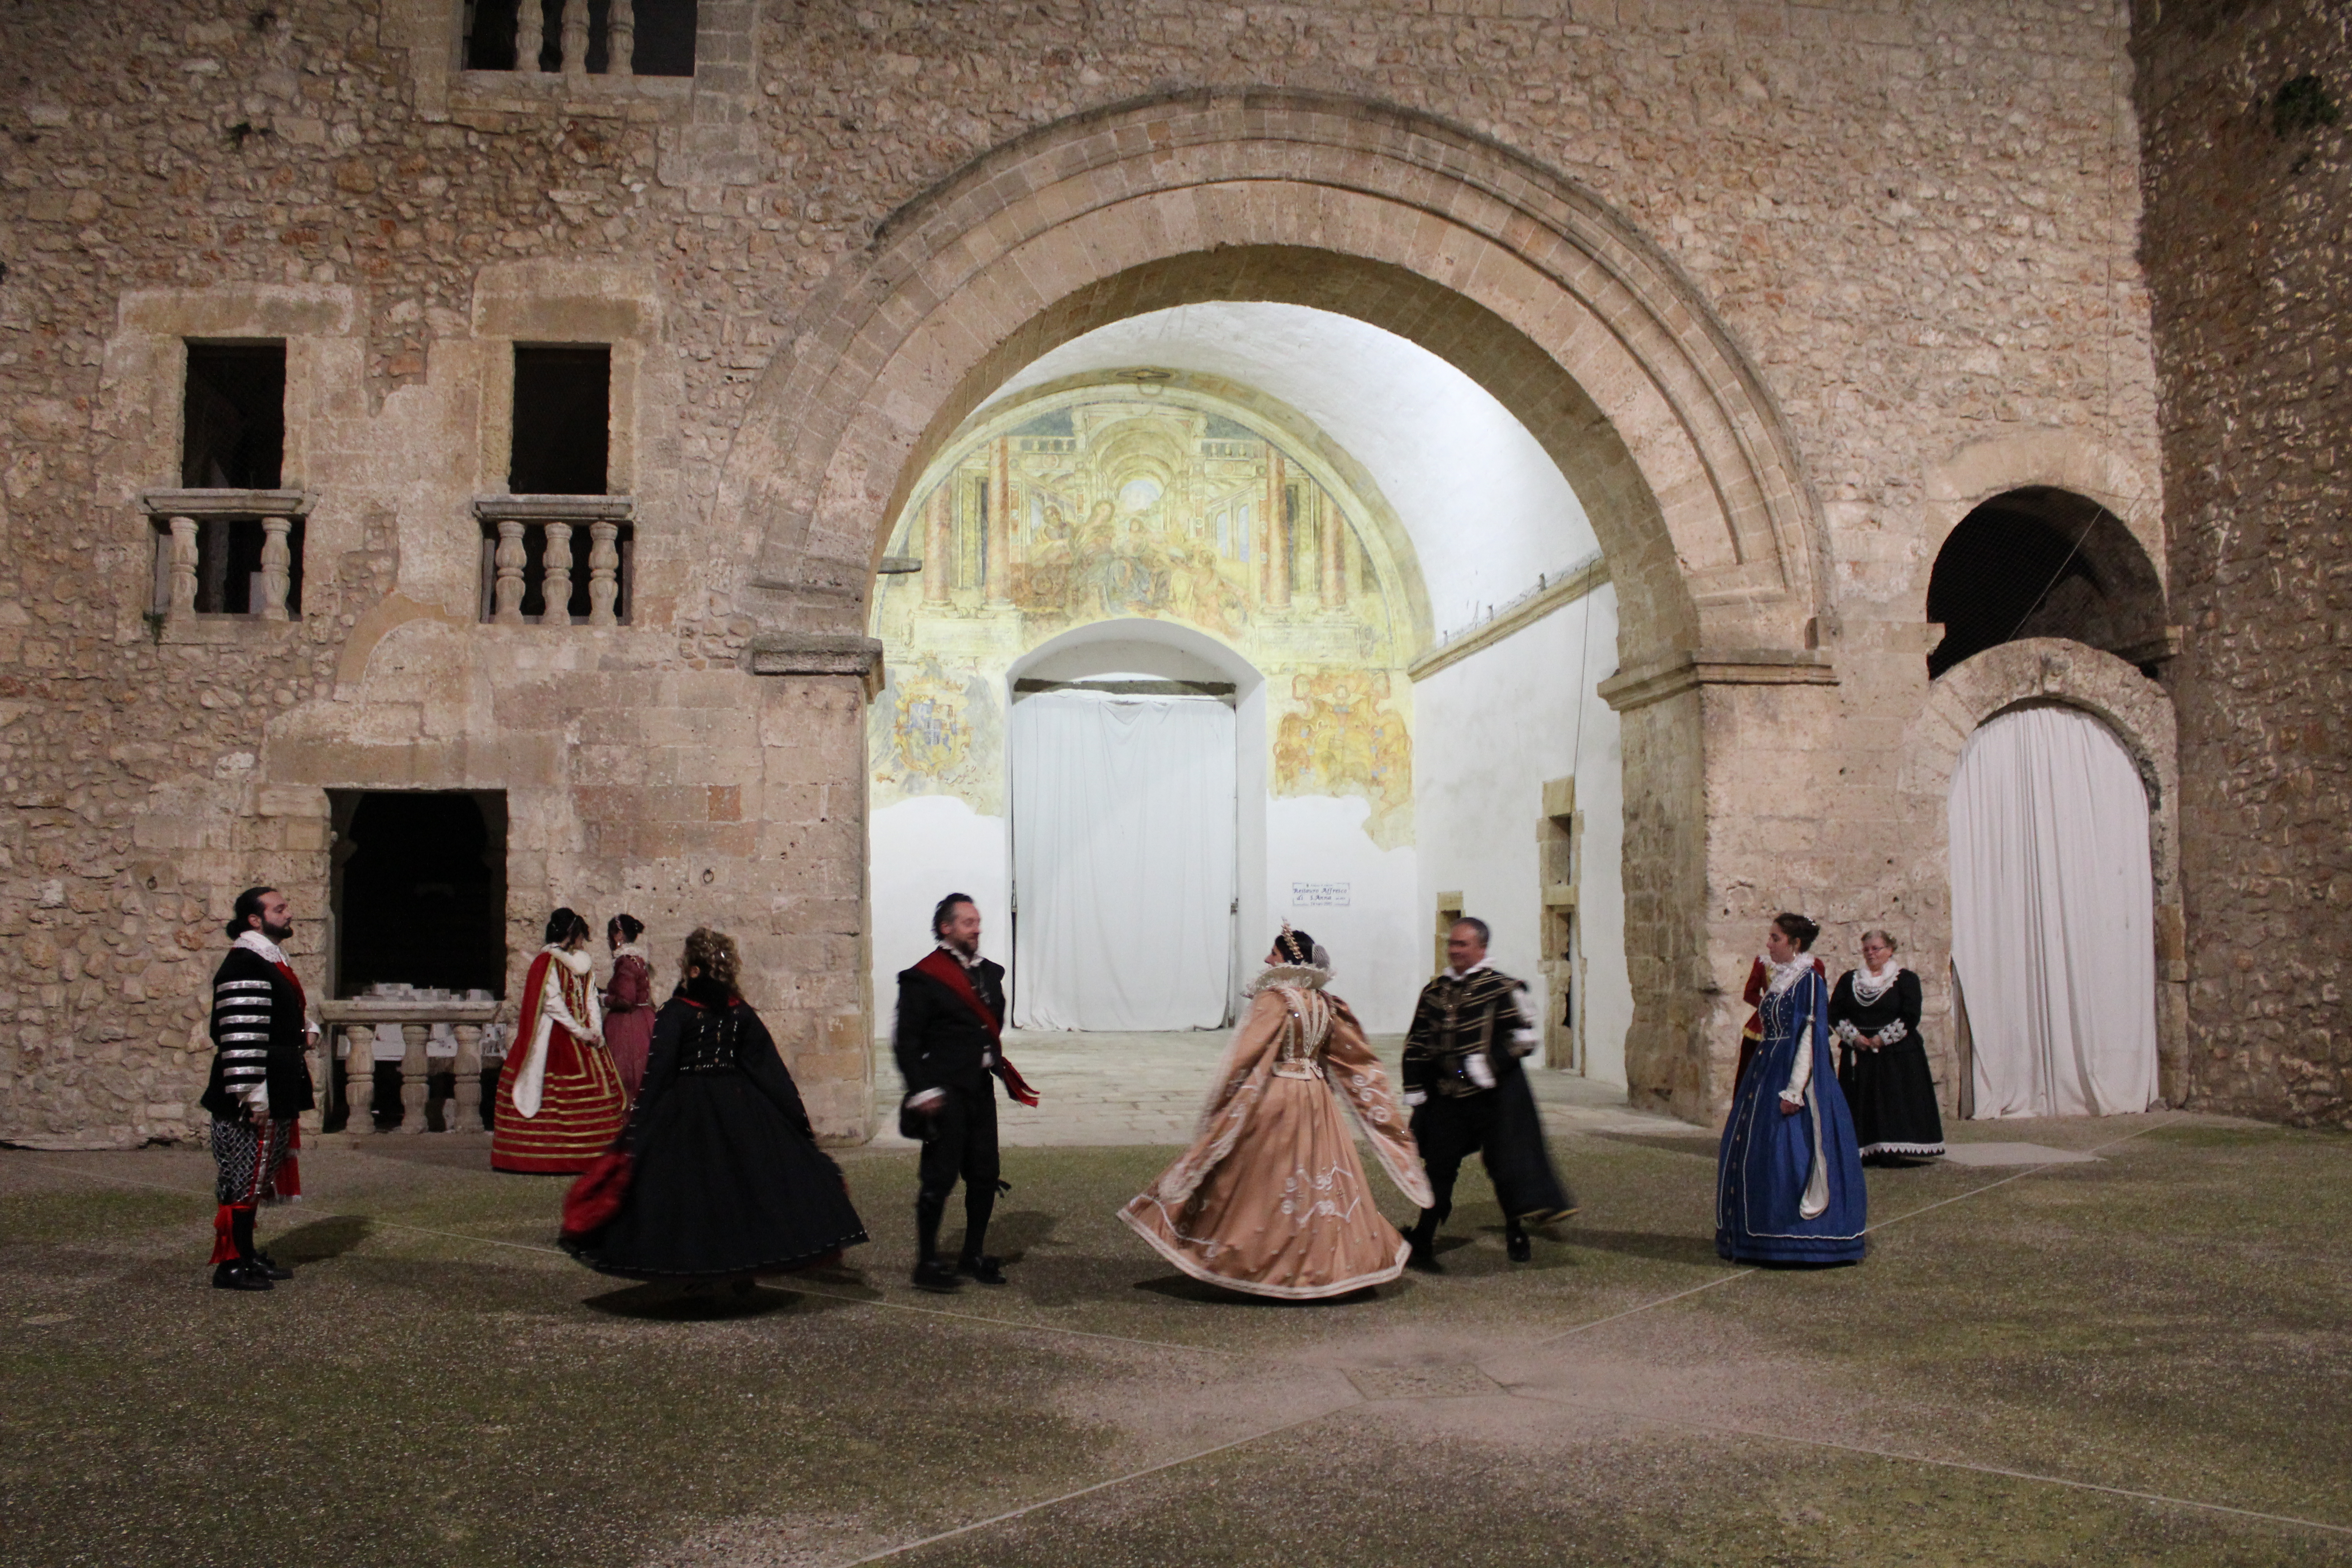 Il gruppo danze storiche la Marchesana in costumi d'epoca